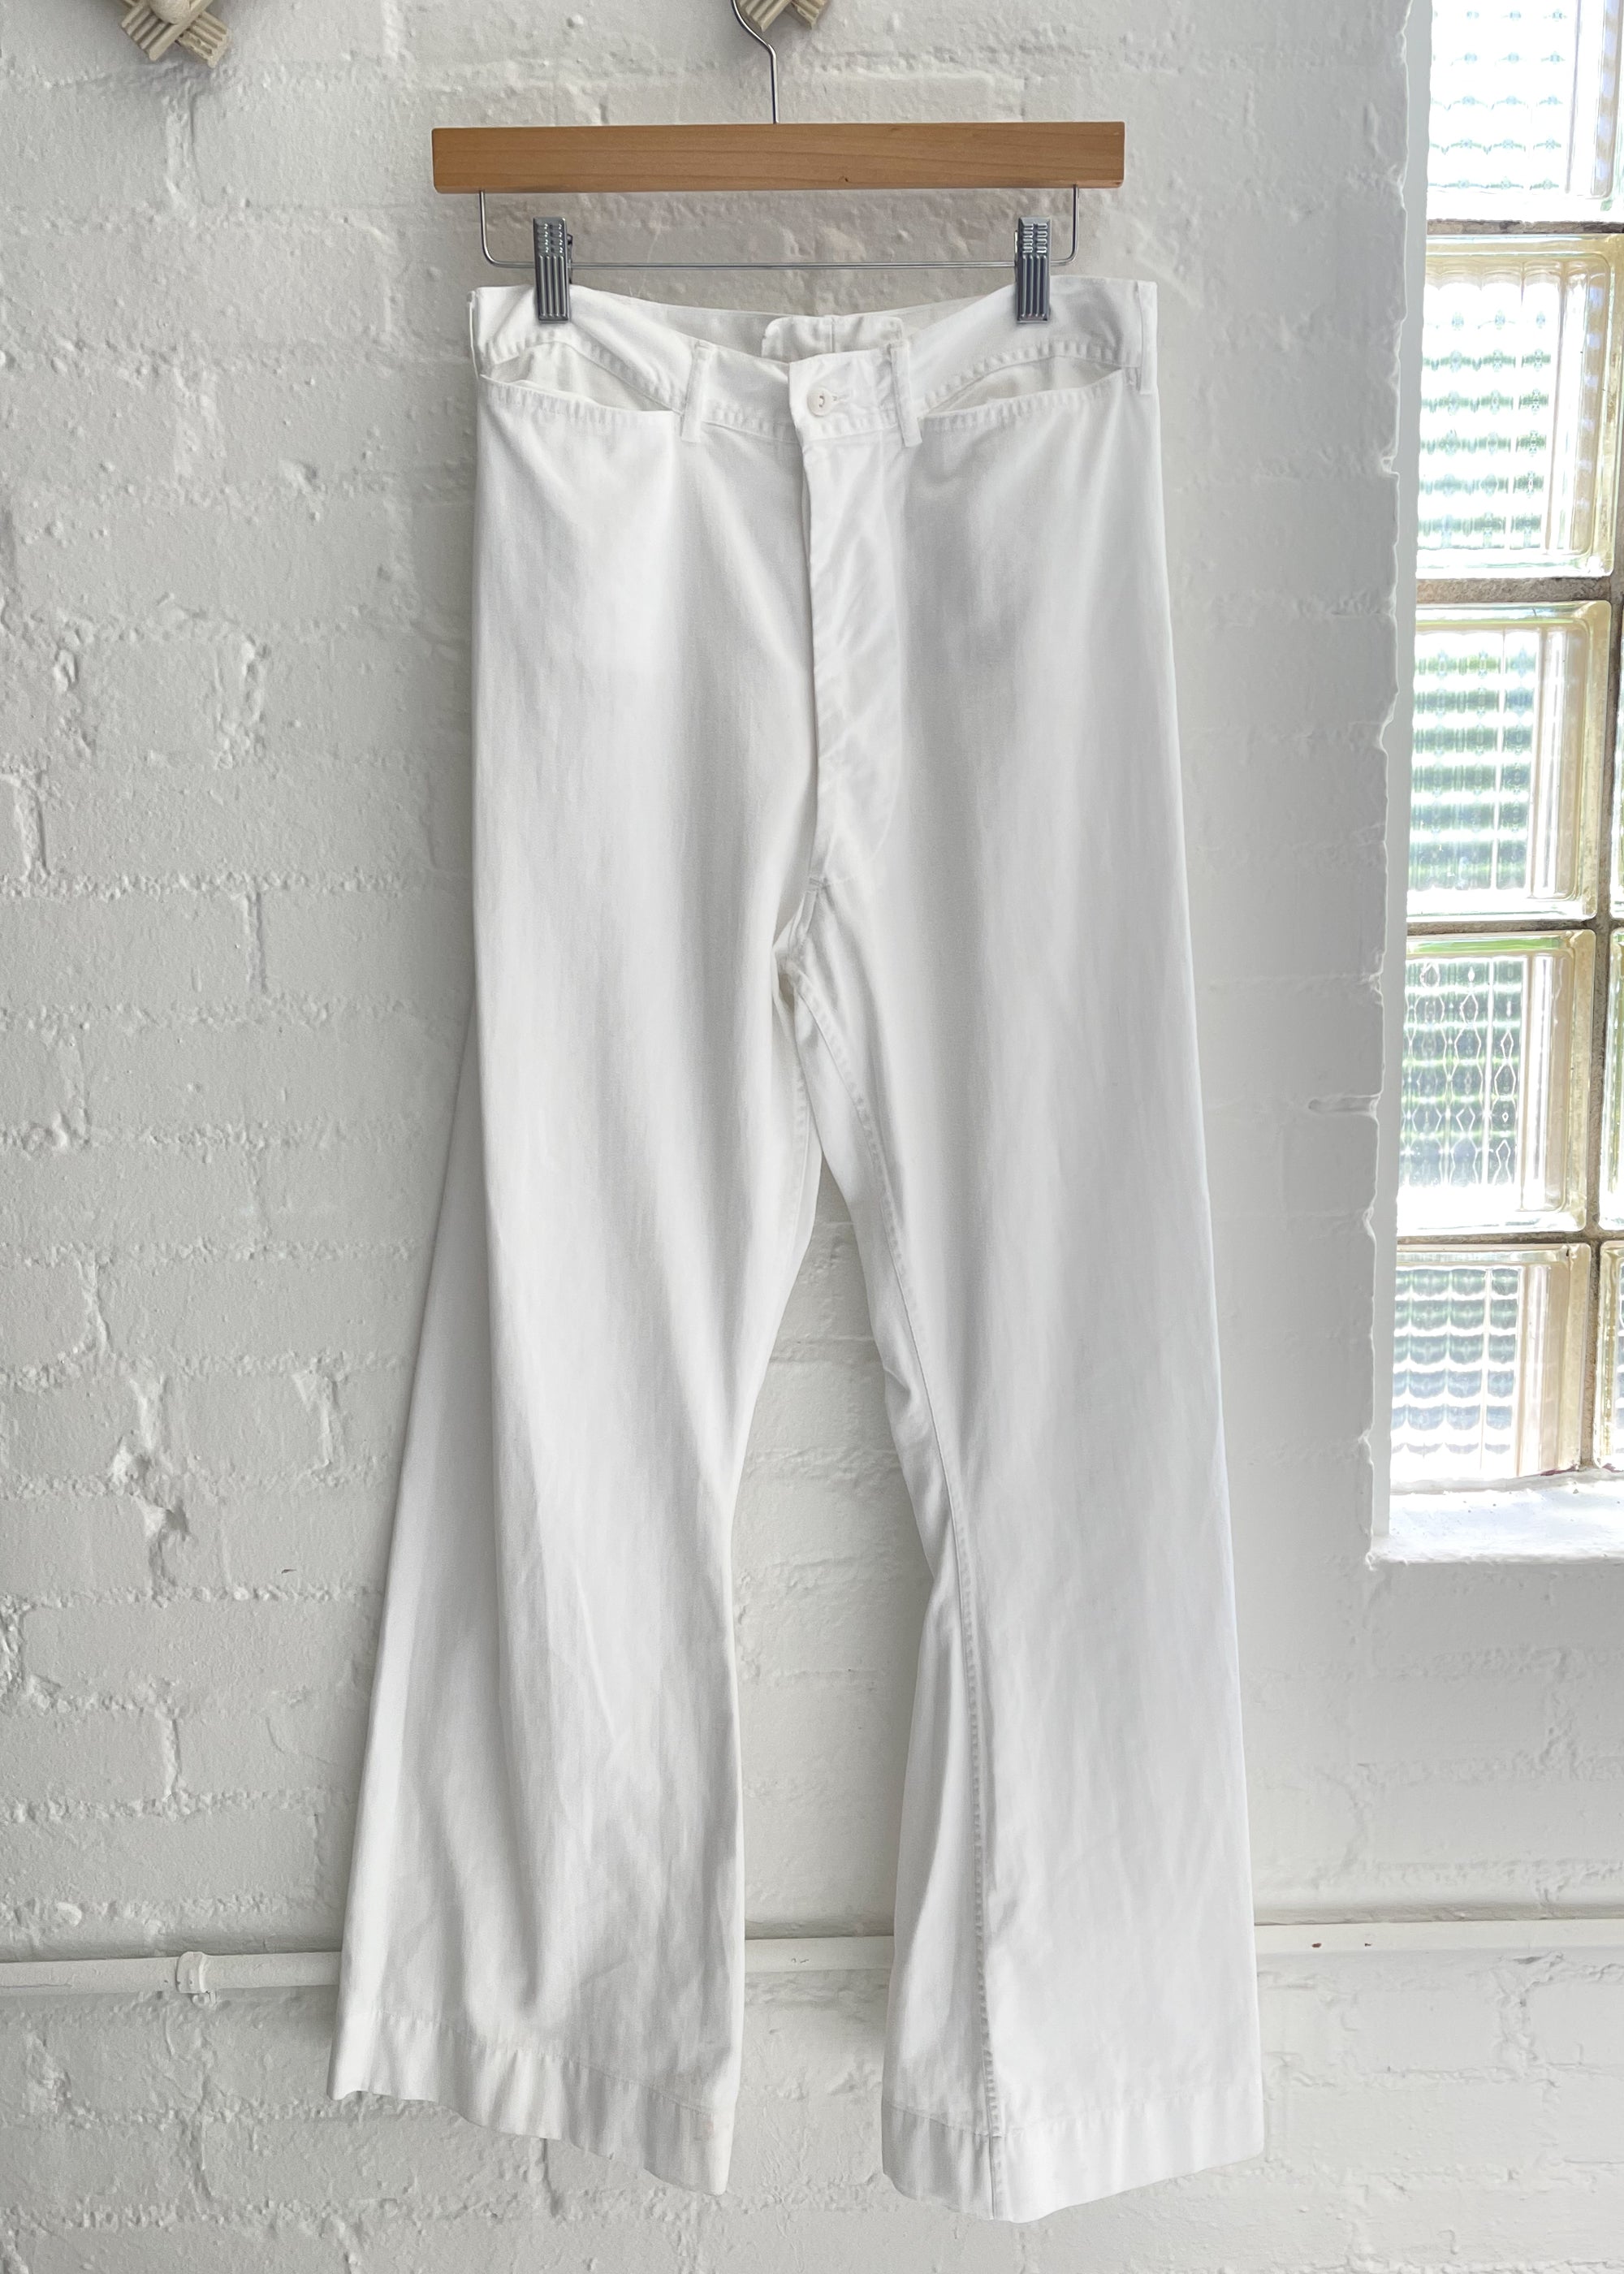 難しいです…US NAVY 40s cotton sailor pants w30